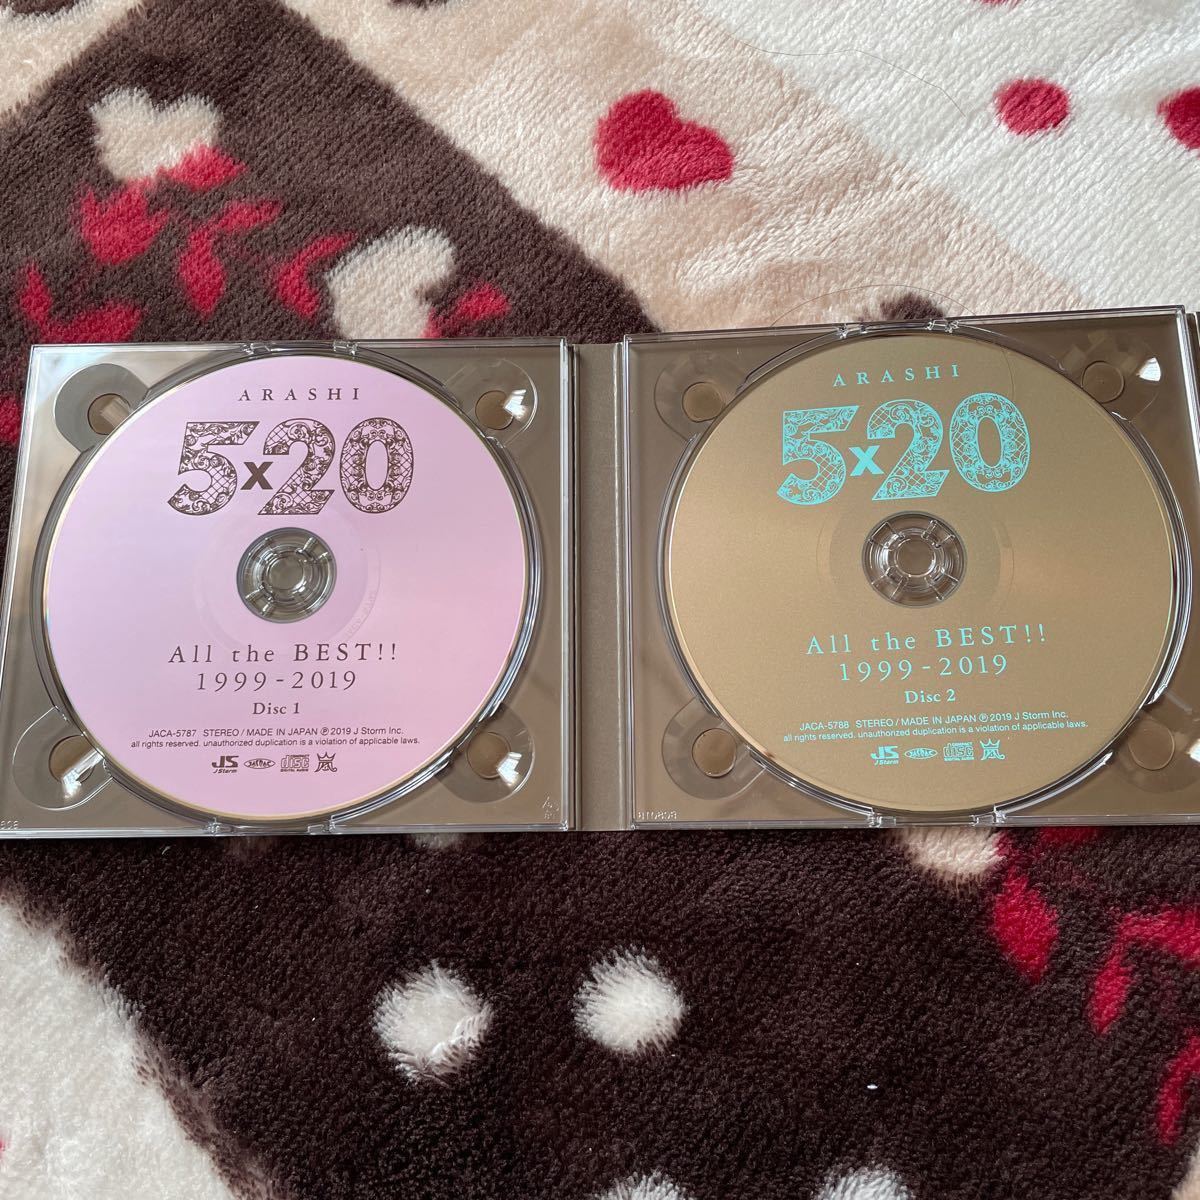 嵐 CD 初回 5×20 All the BEST!! 1999-2019 初回限定盤2